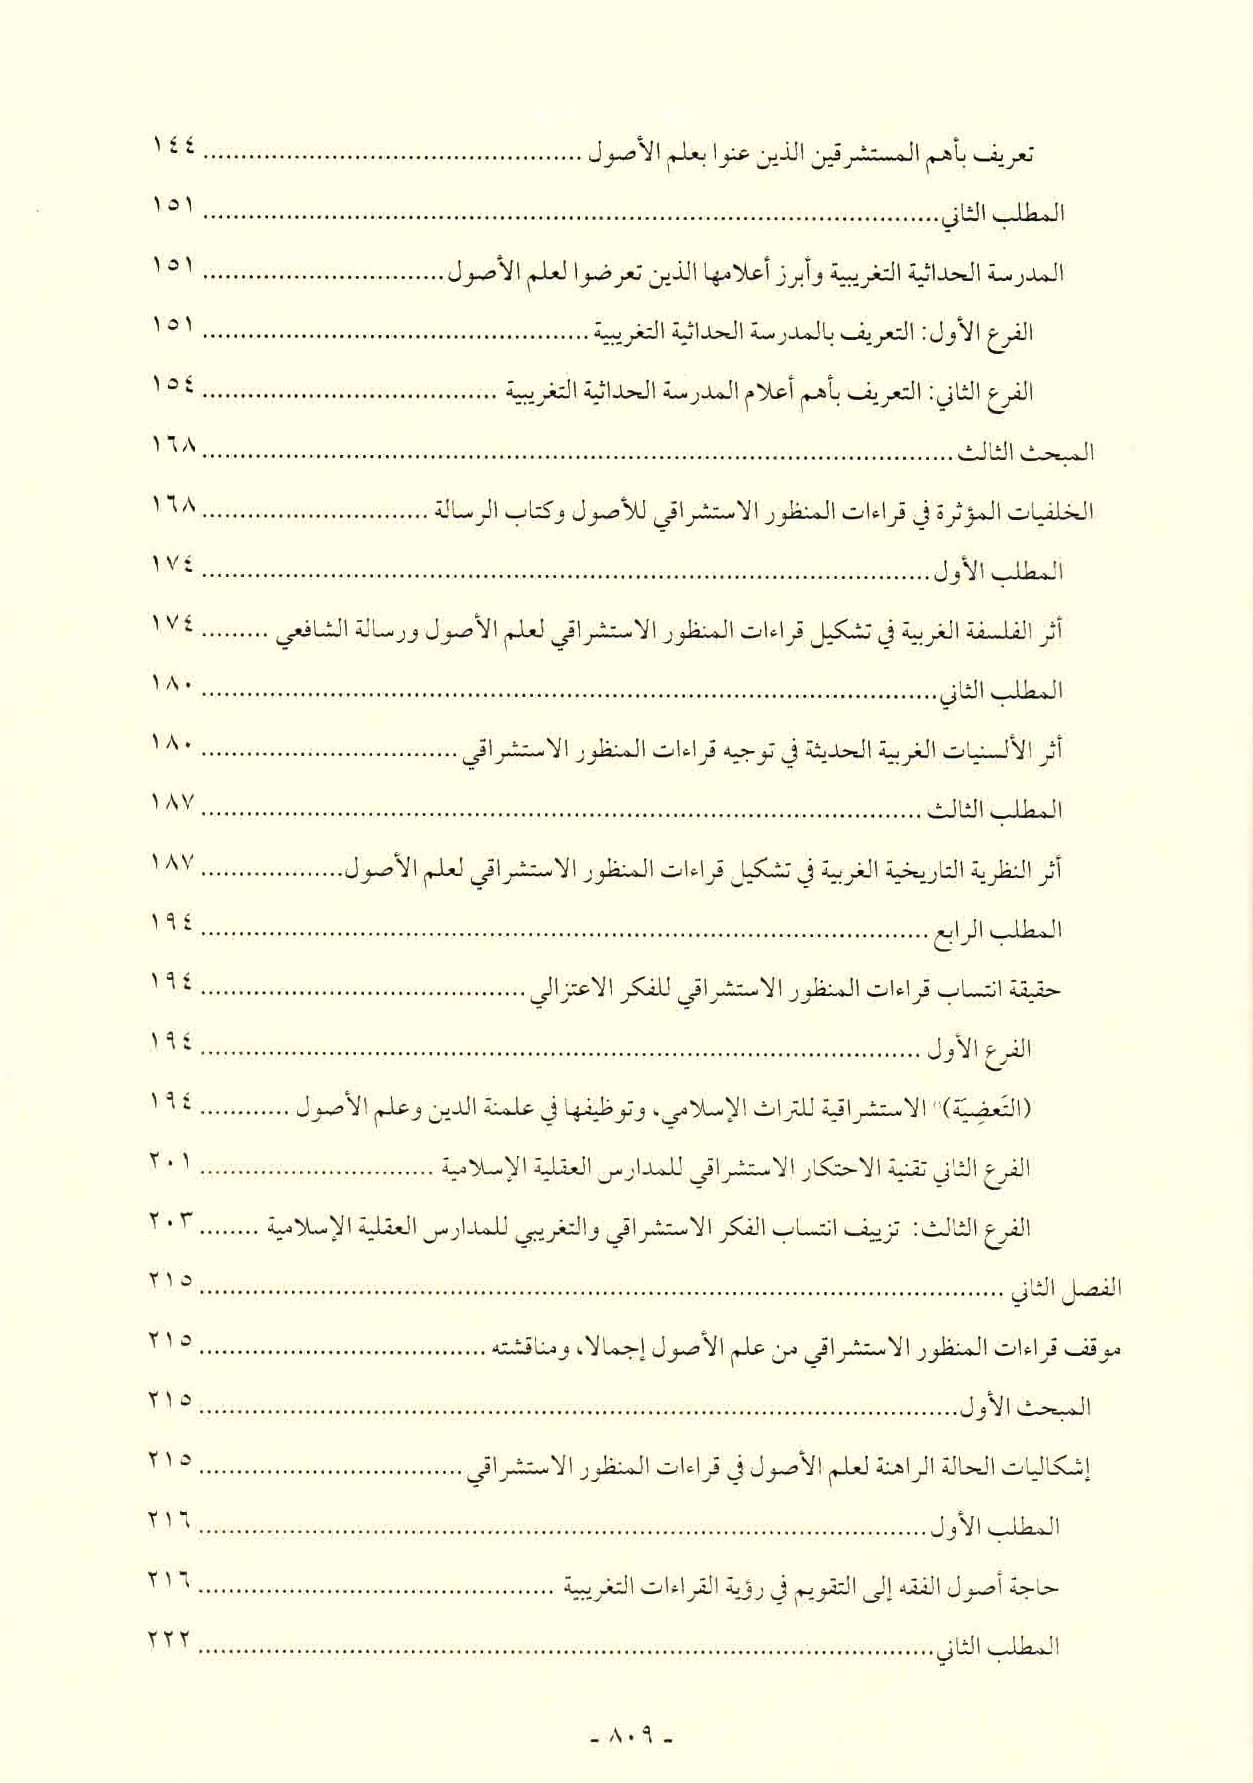 قائمة محتويات كتاب افتراءات المستشرقين والحداثيين على أصول الشريعة وأئمتها للدكتور هاني محمود ص. 809